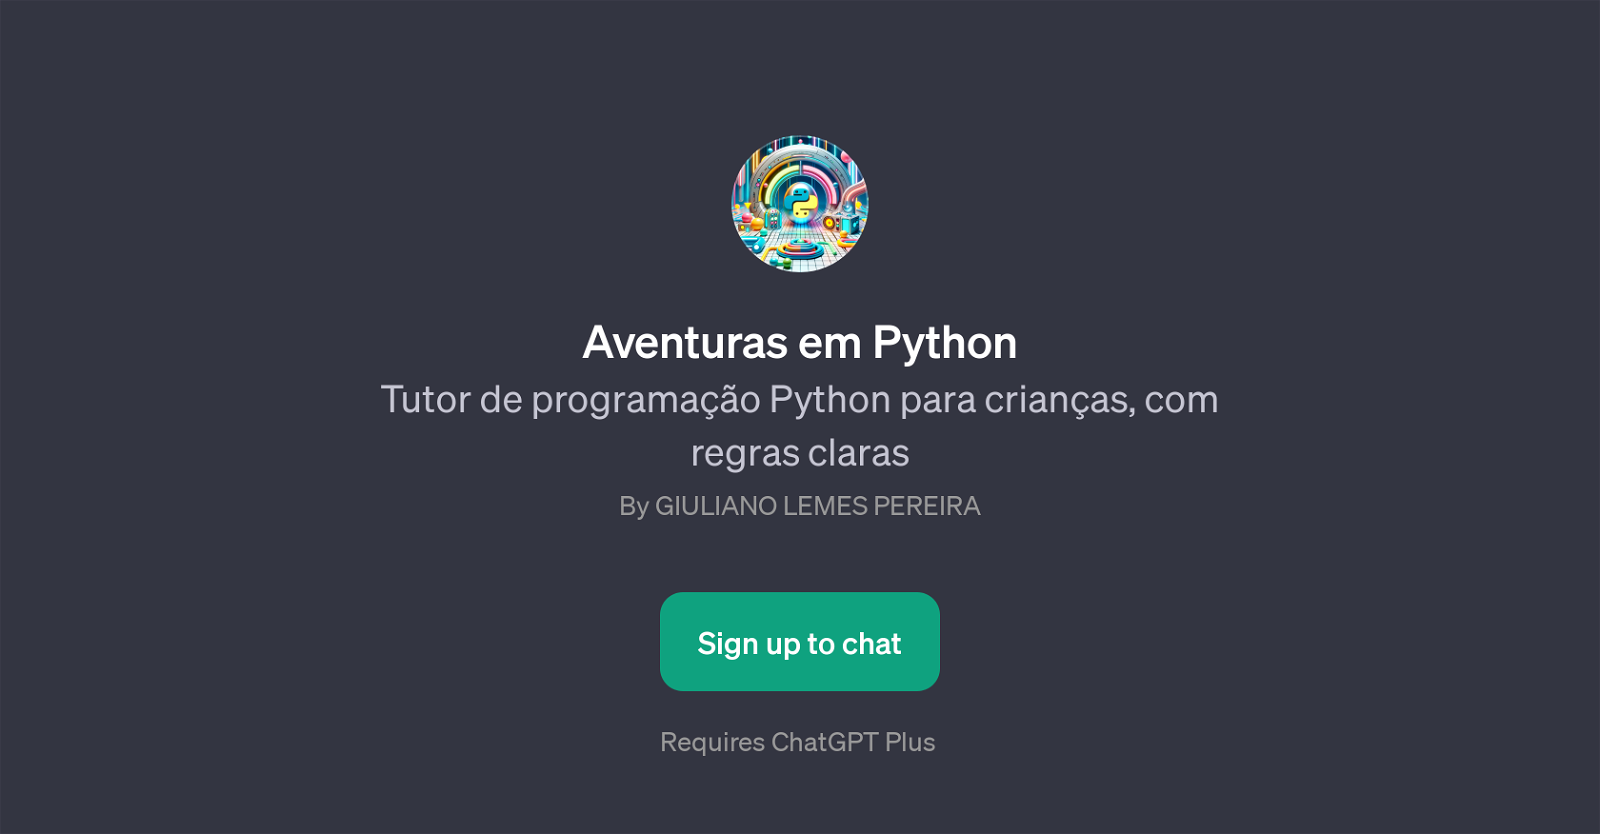 Aventuras em Python website